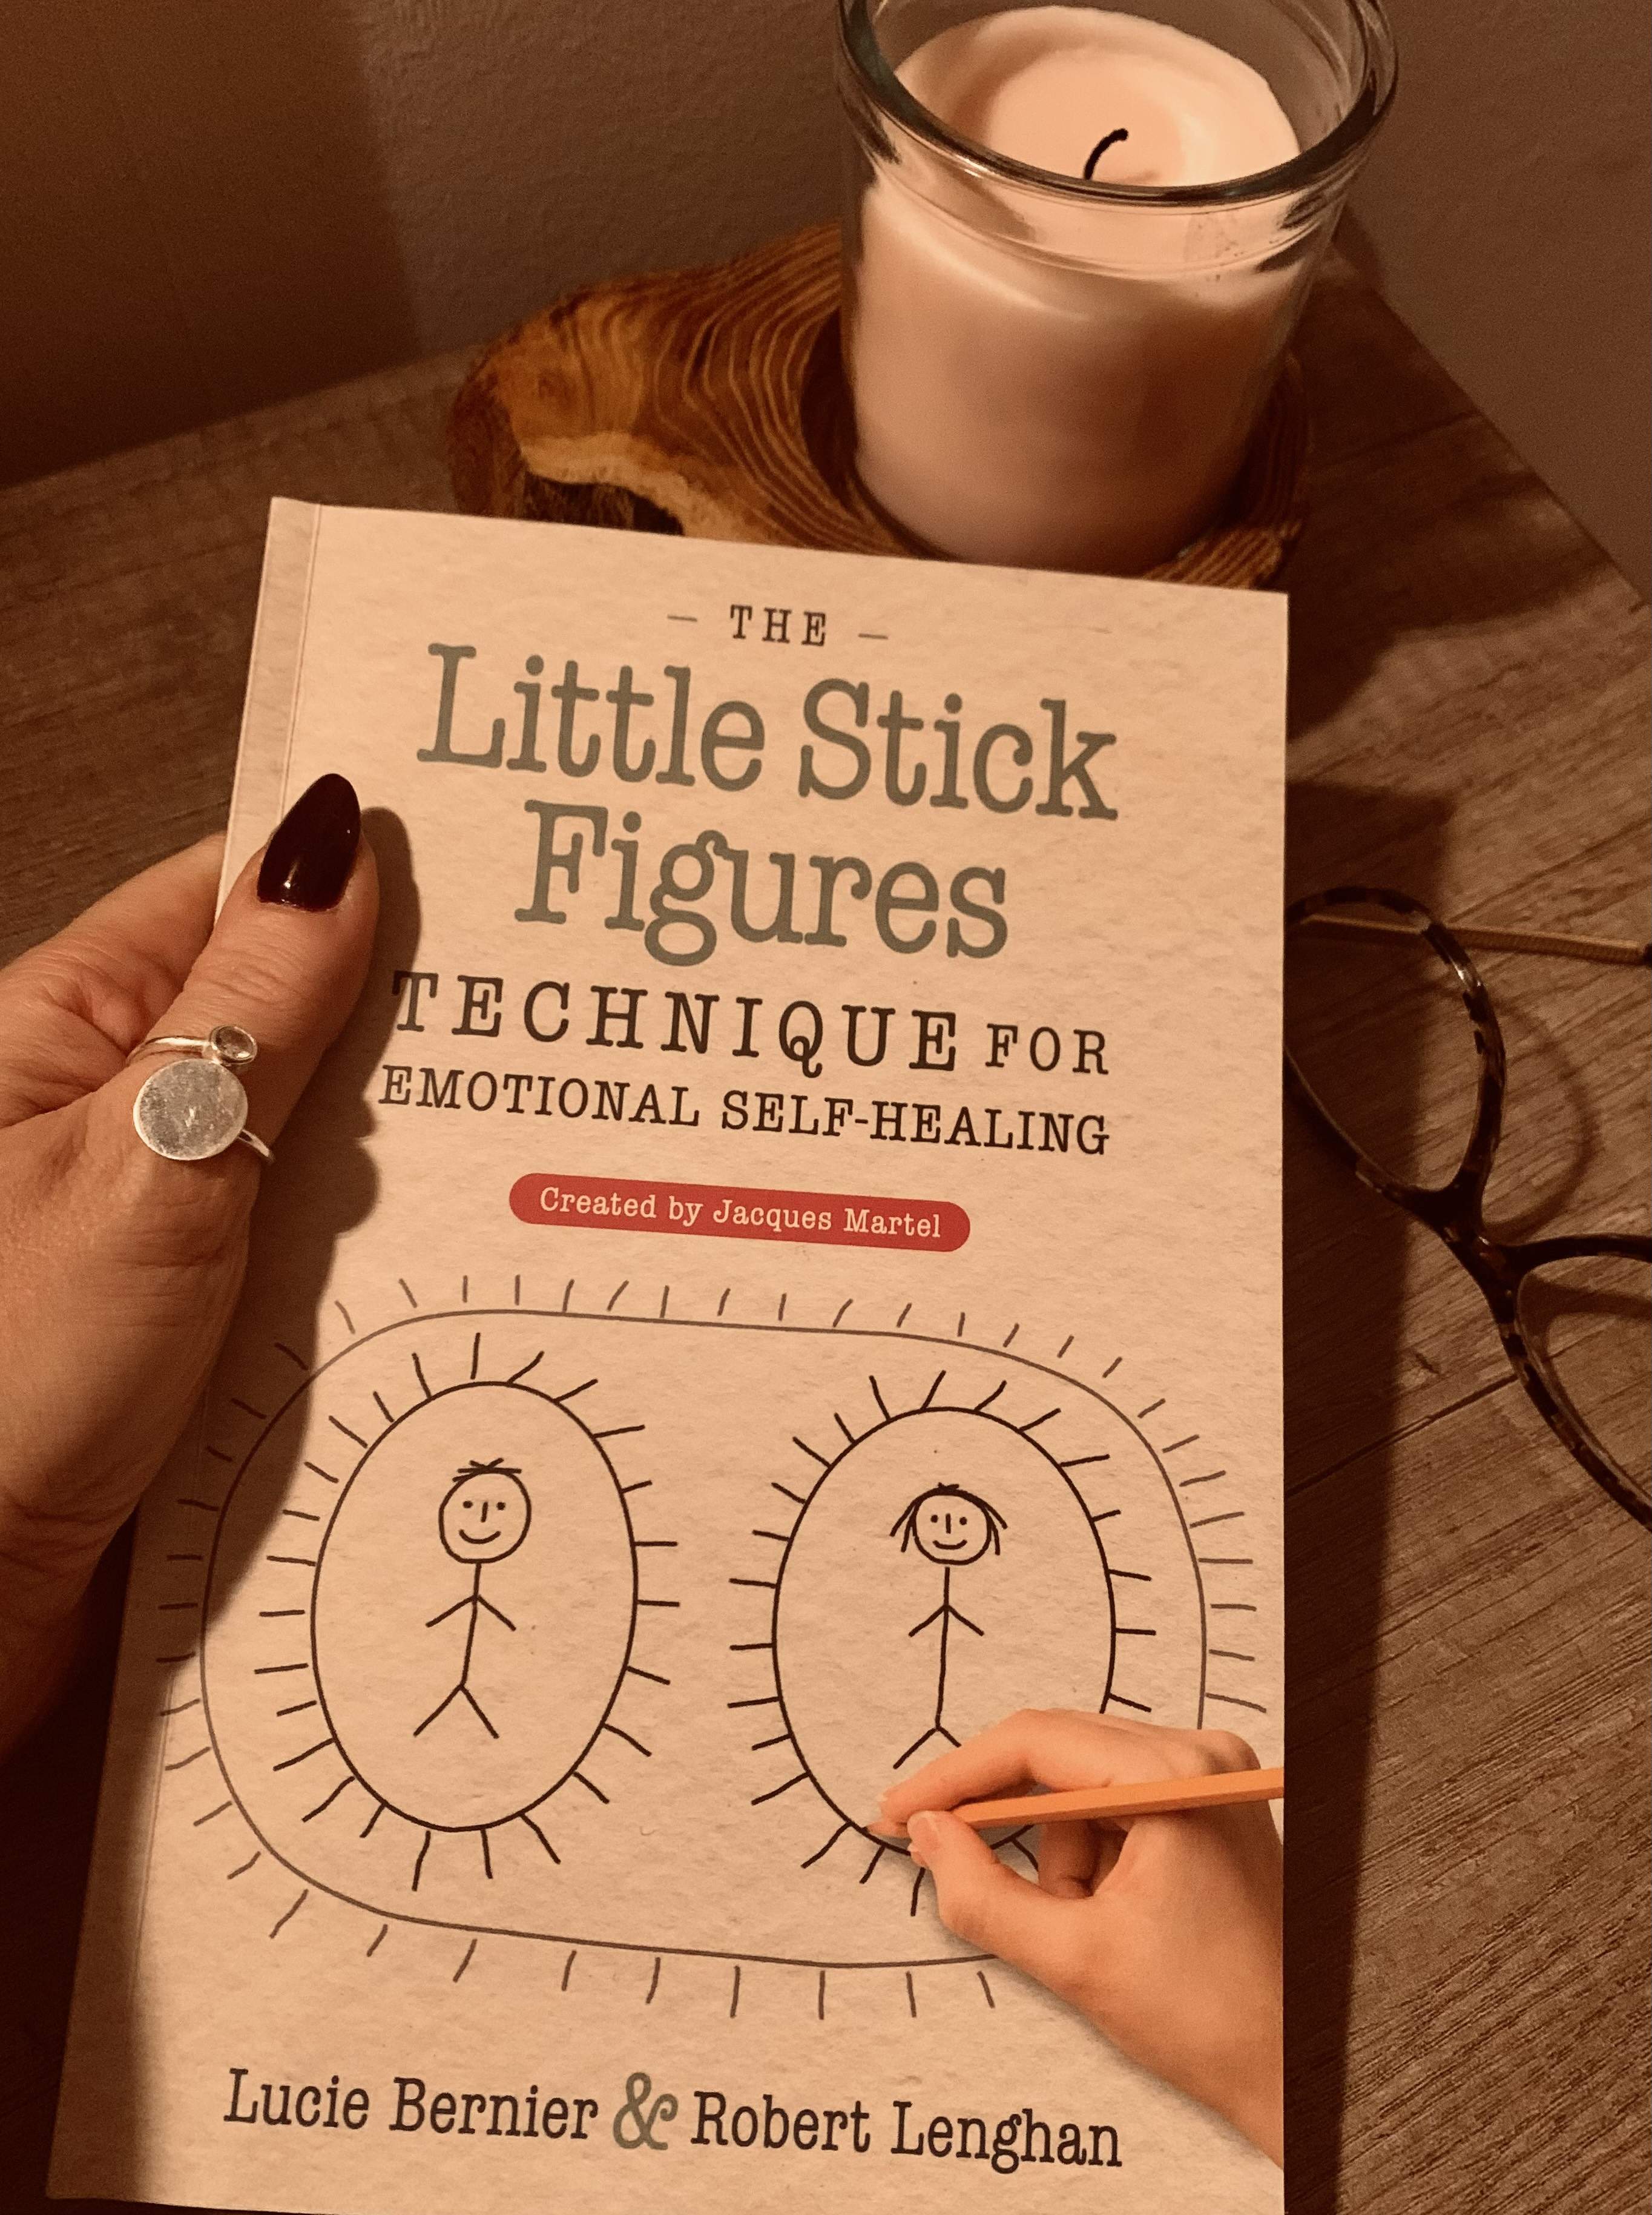 Little stick figures technique - tehnica micilor figurine